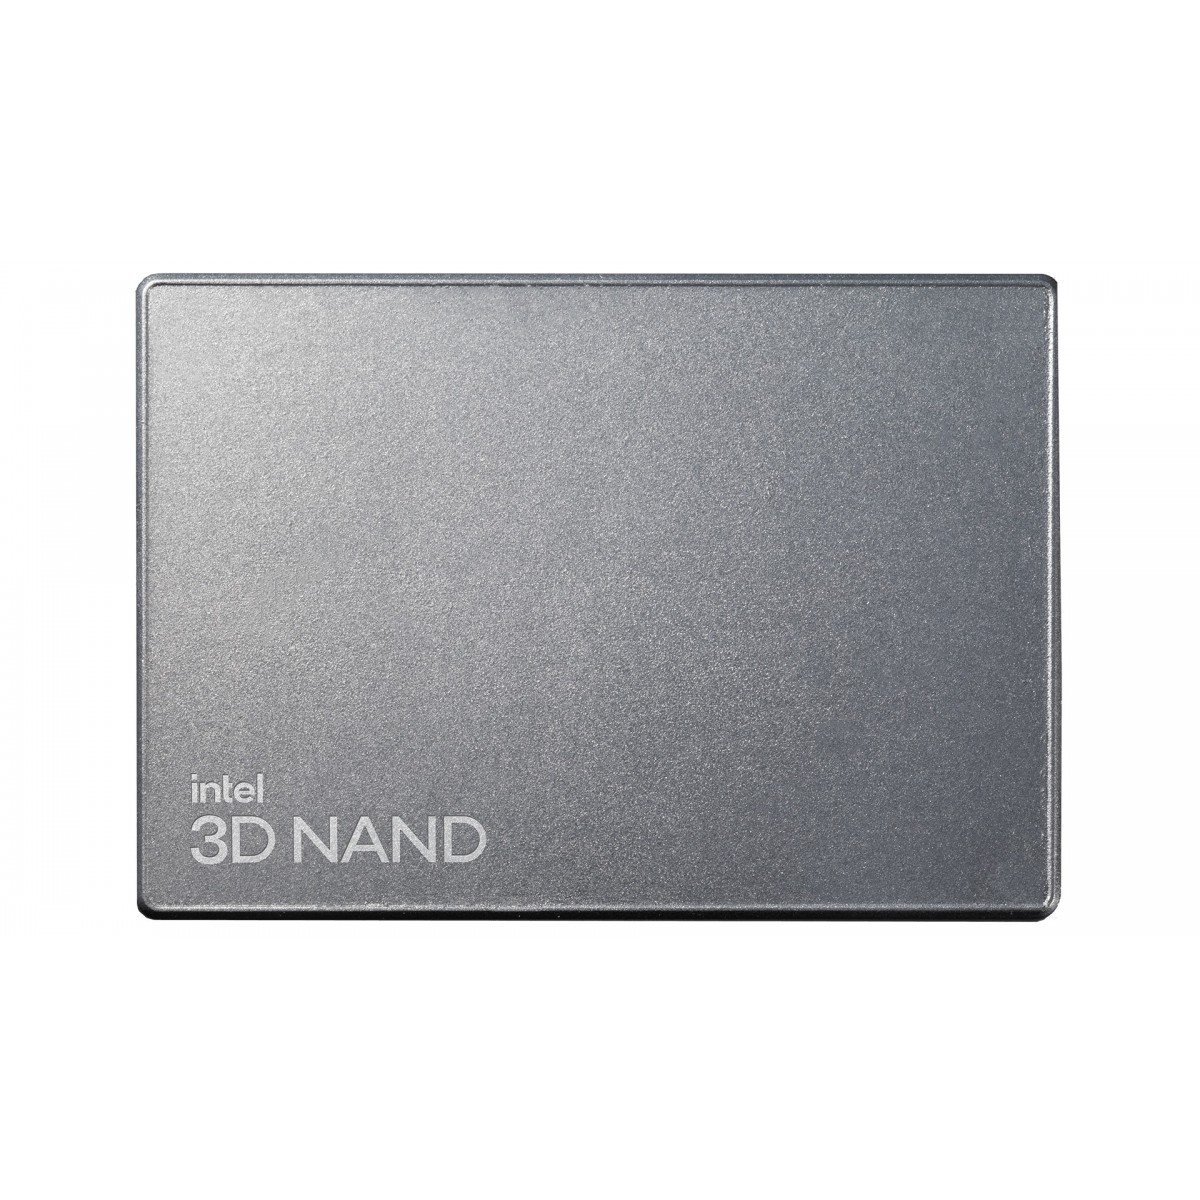 Intel SSD-P5520 15.36TB U.2 15mm PCIe SglPk - Solid State Disk - 15,360 GB